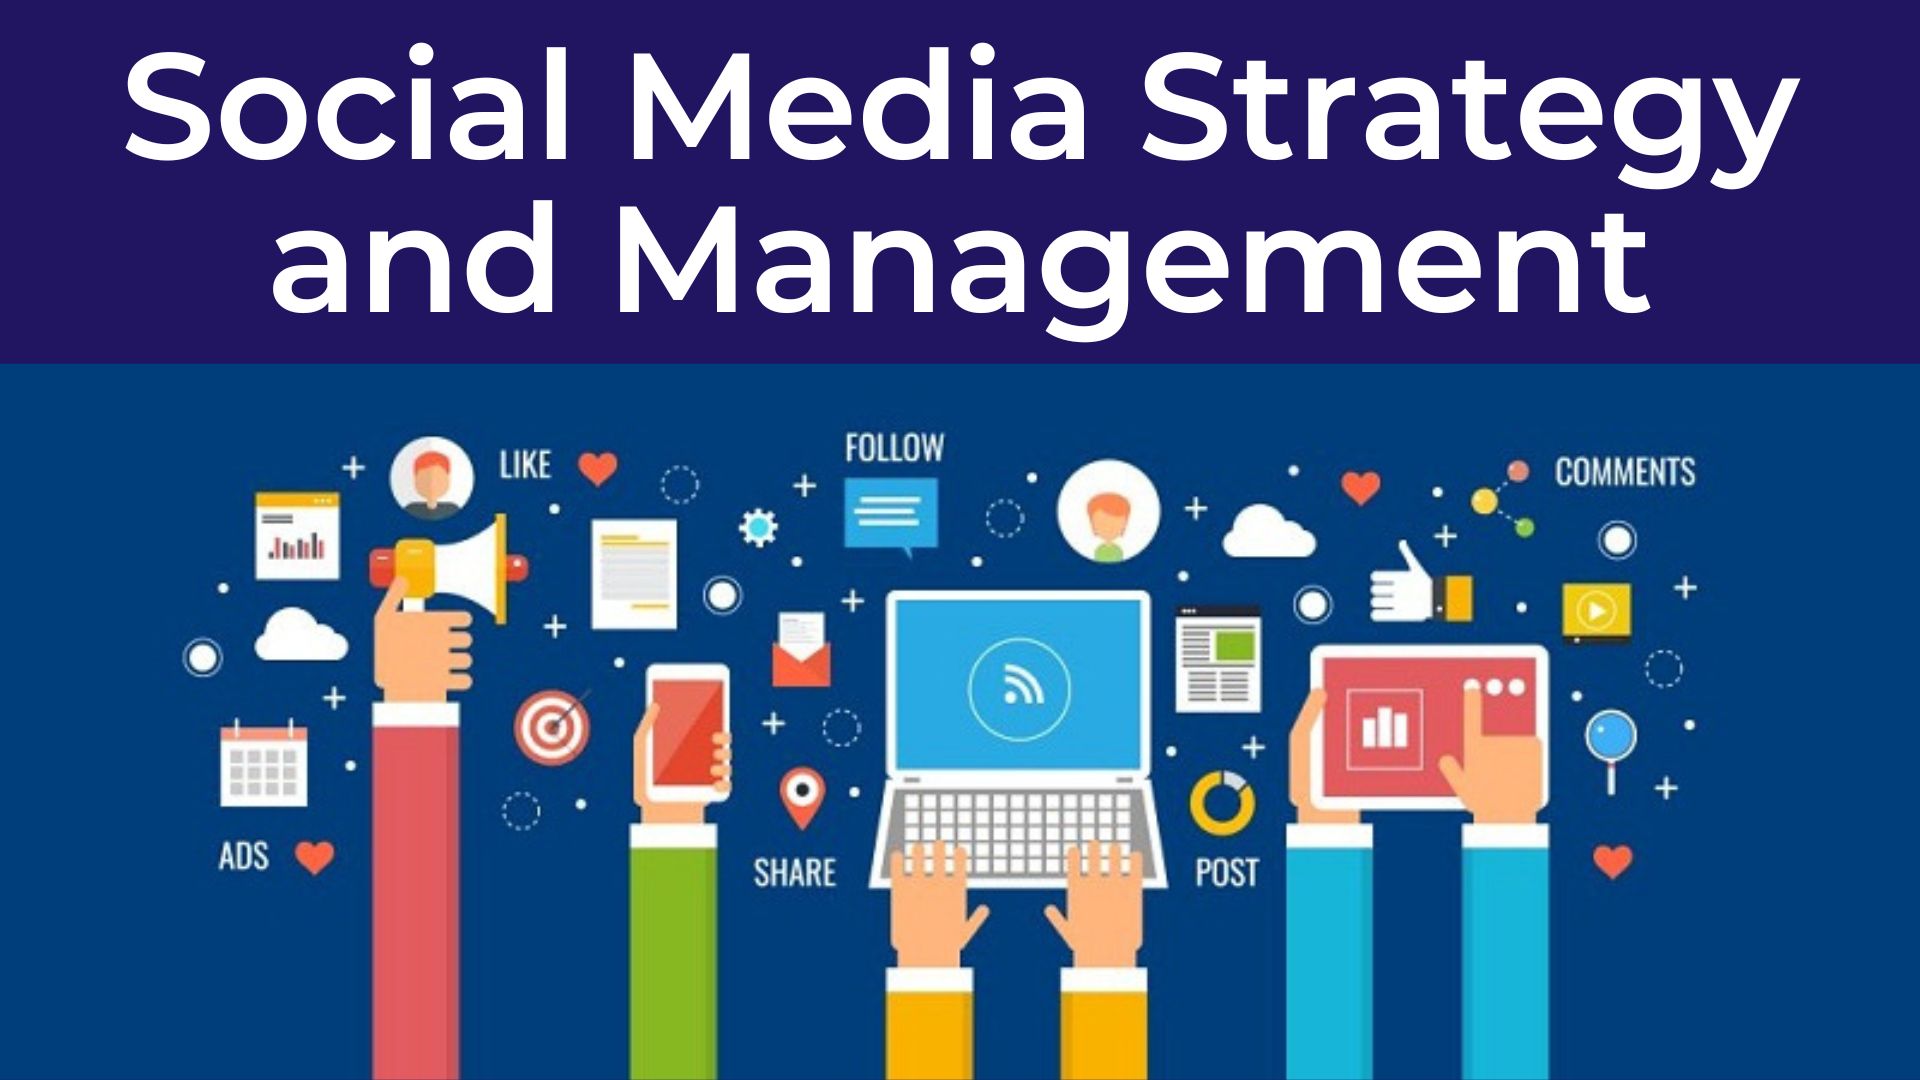 Social Media Management and Strategy - Chiến lược và quản lý truyền thông MXH